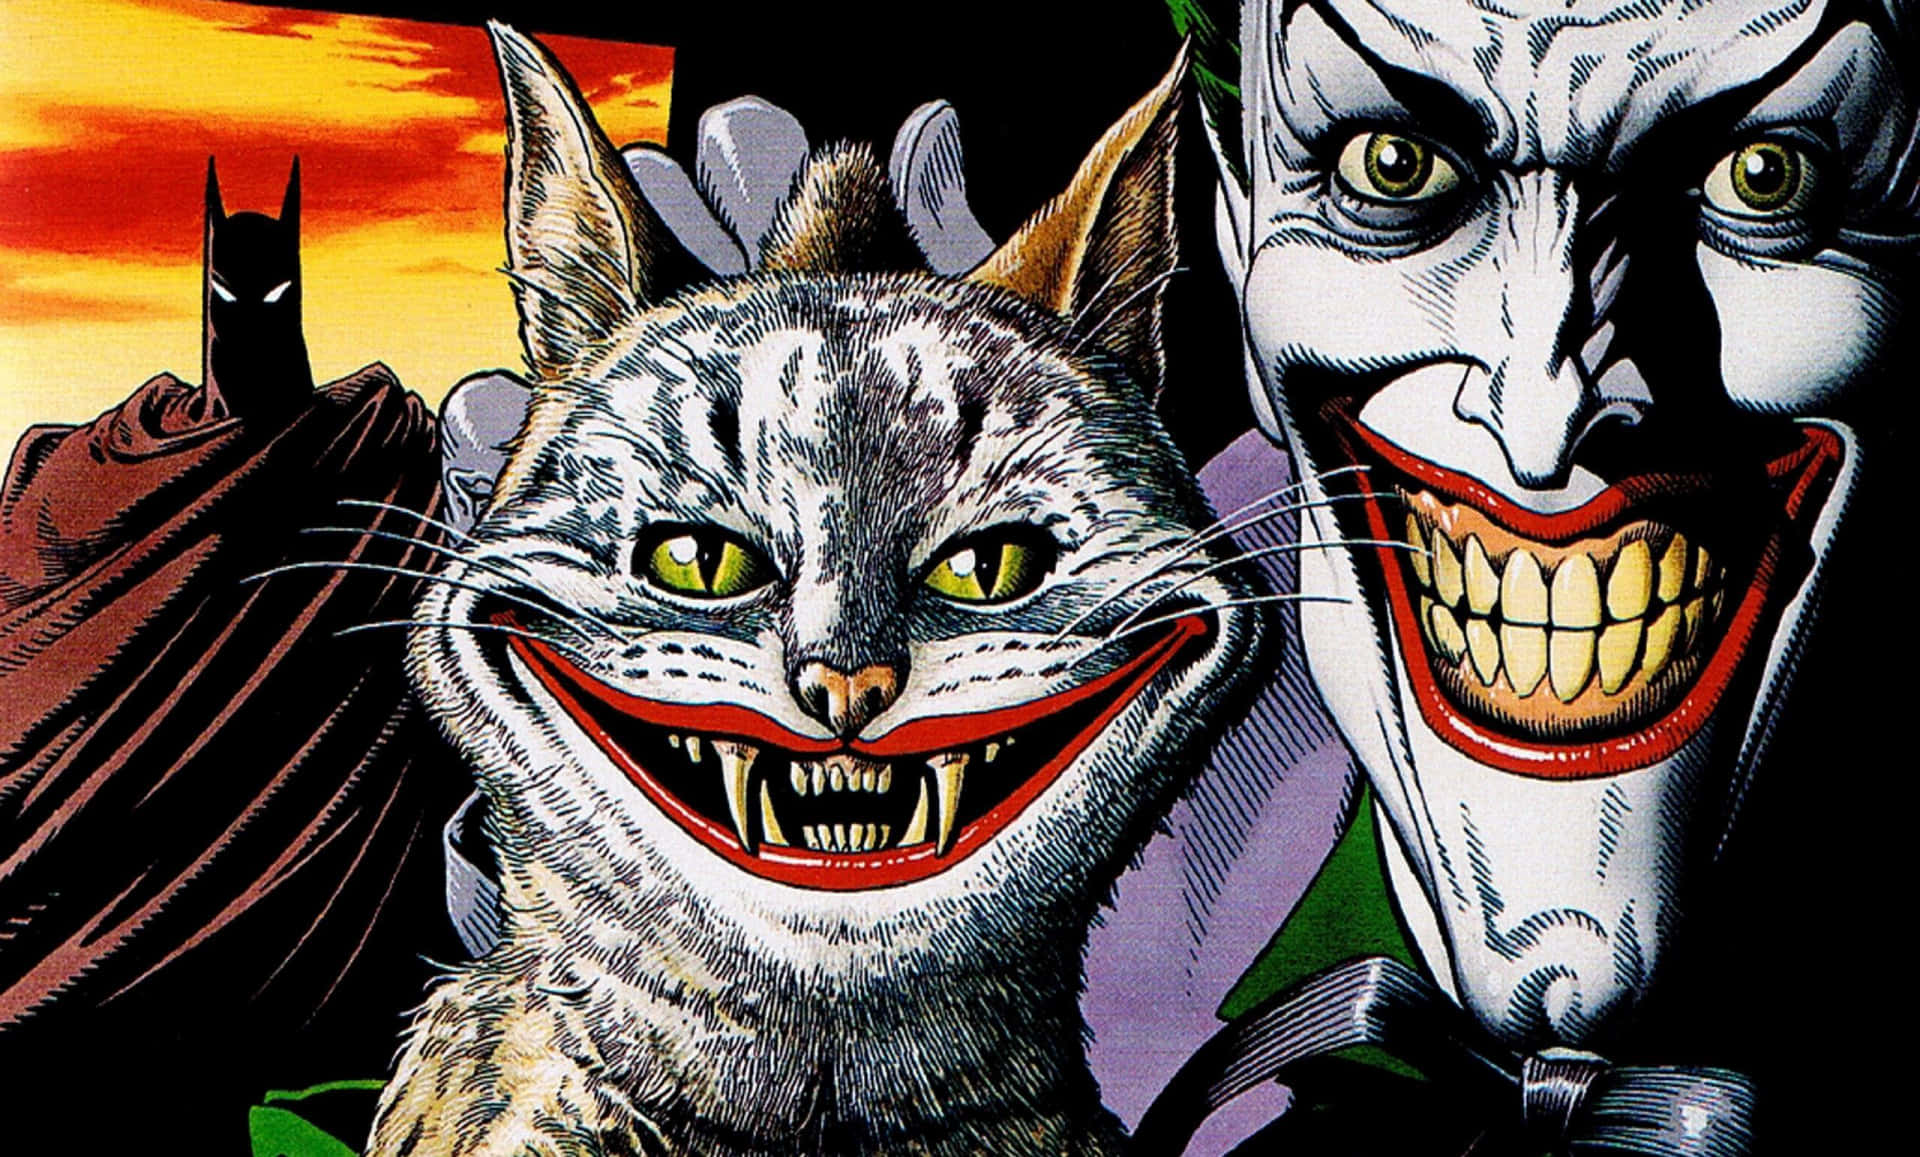 The Sinister Smile of Joker in the World of Comics Wallpaper